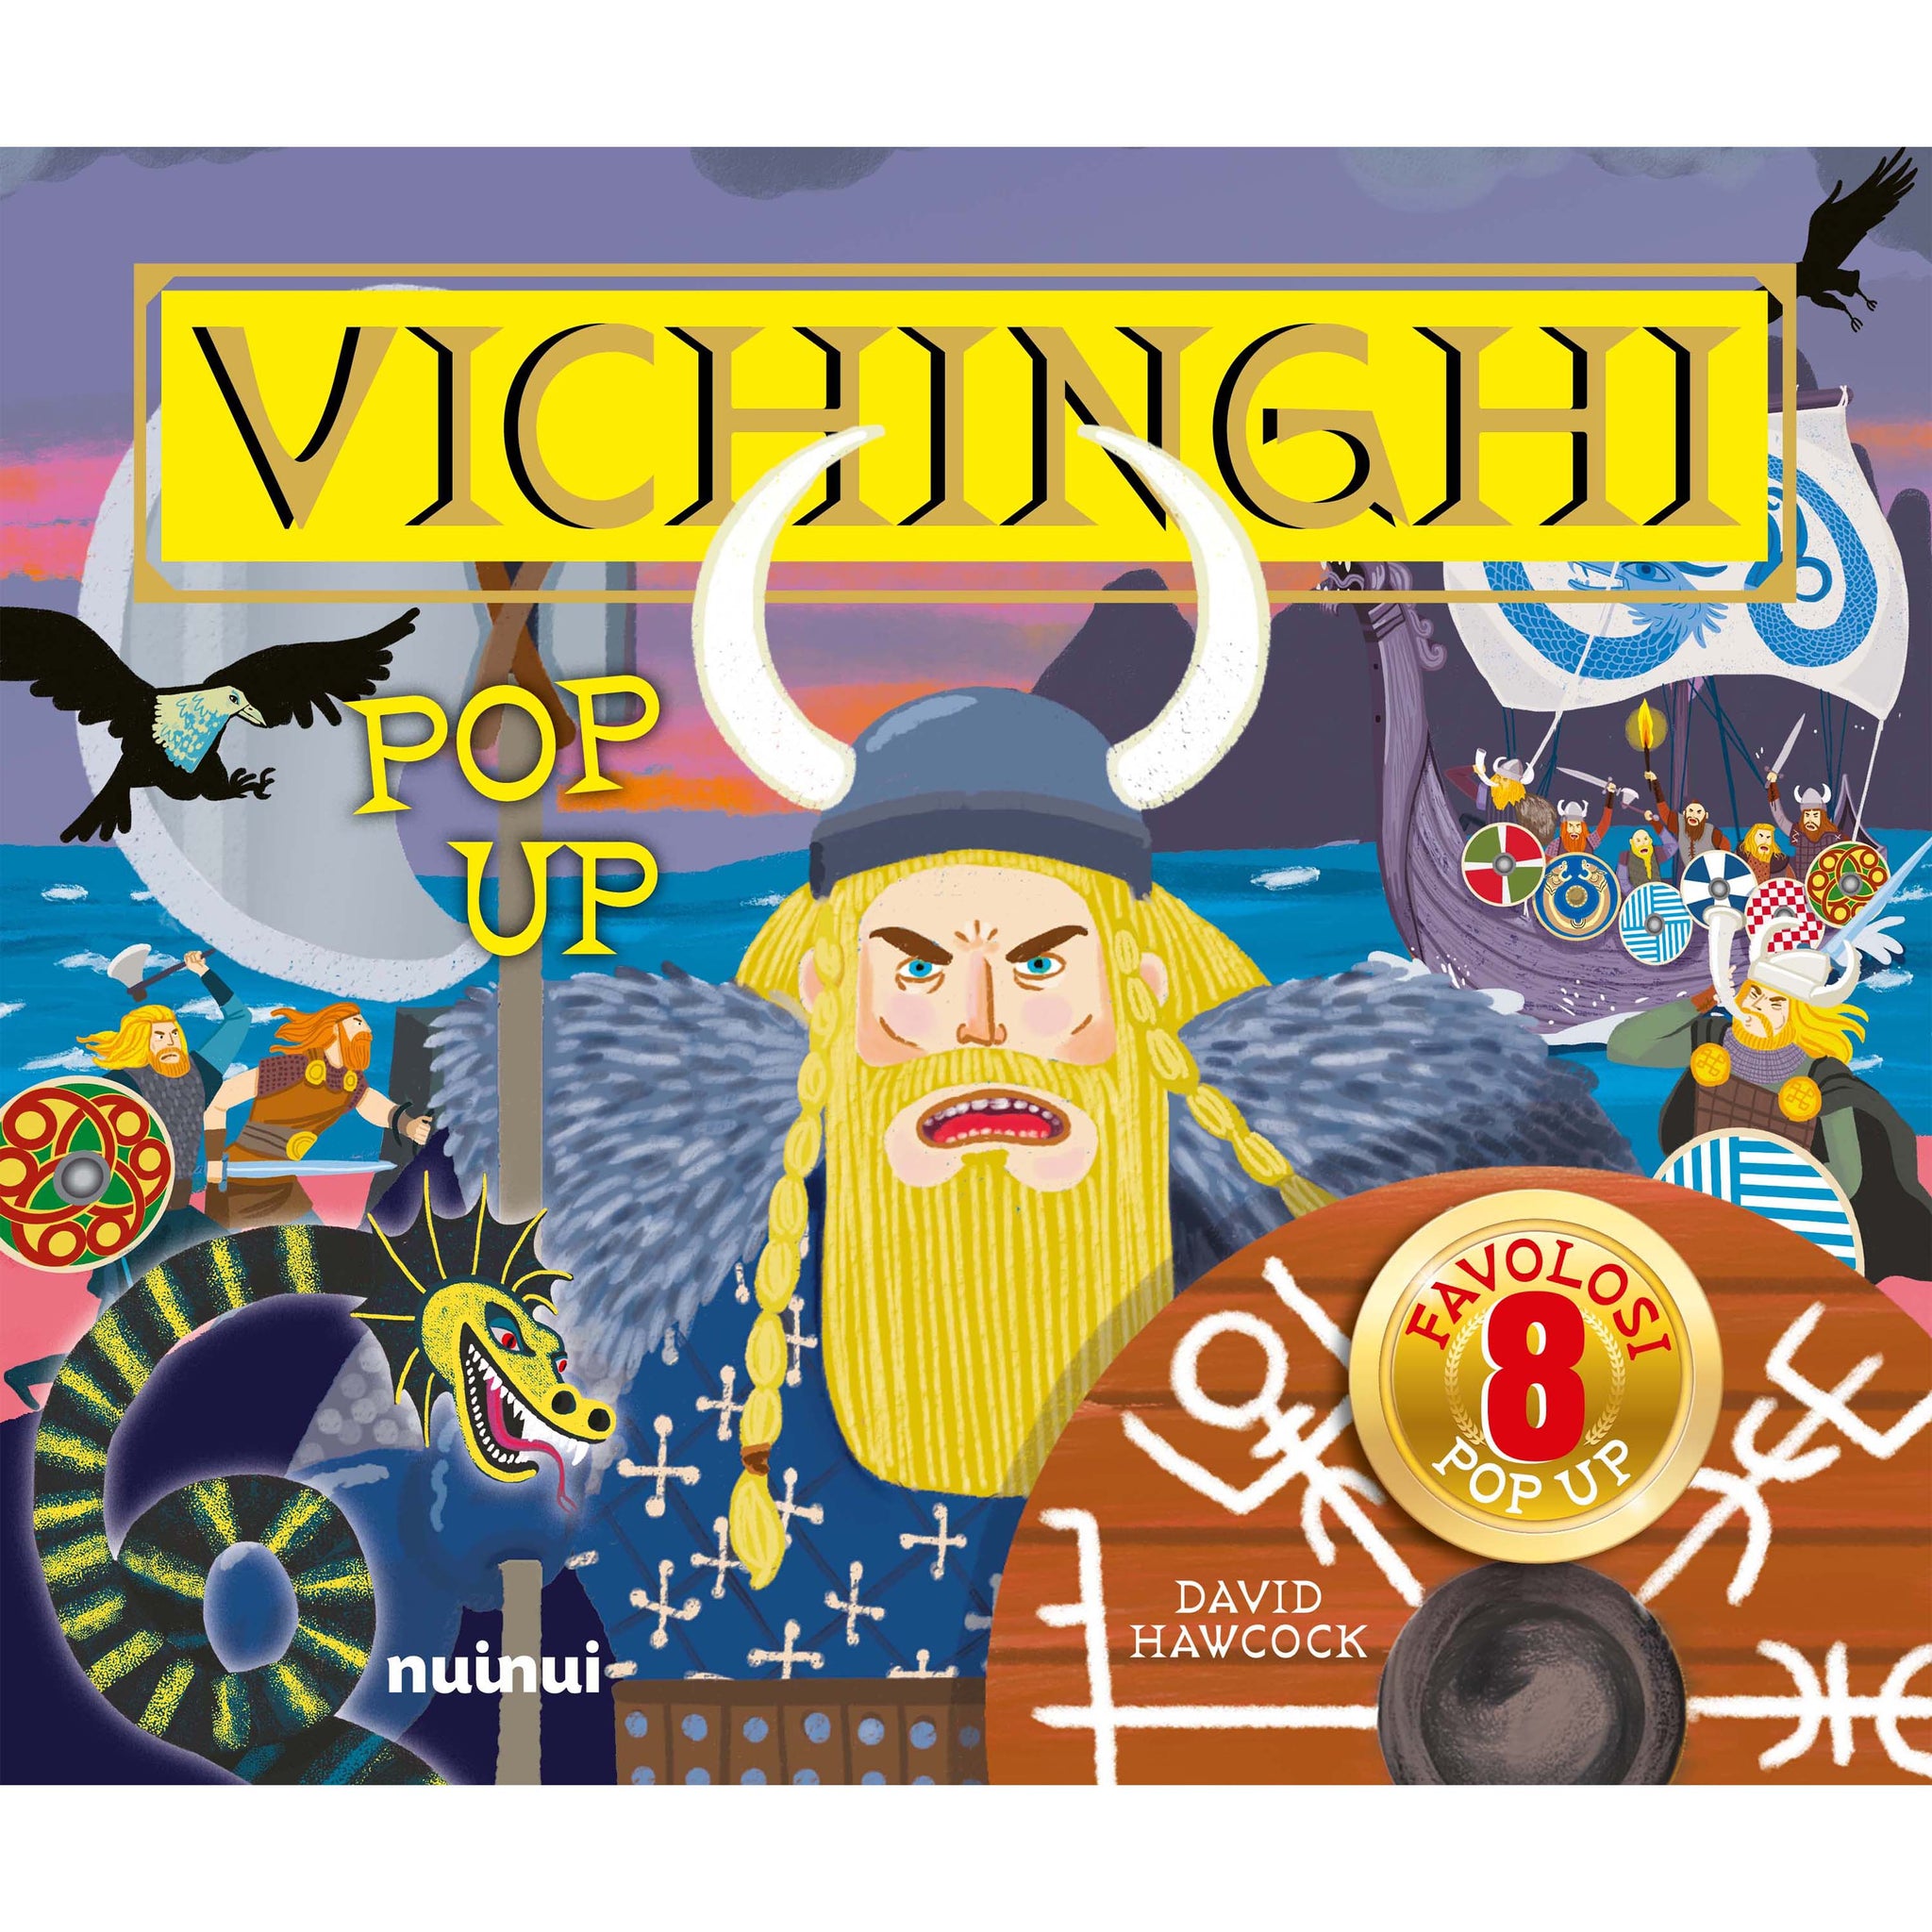 Vikings - Pop up